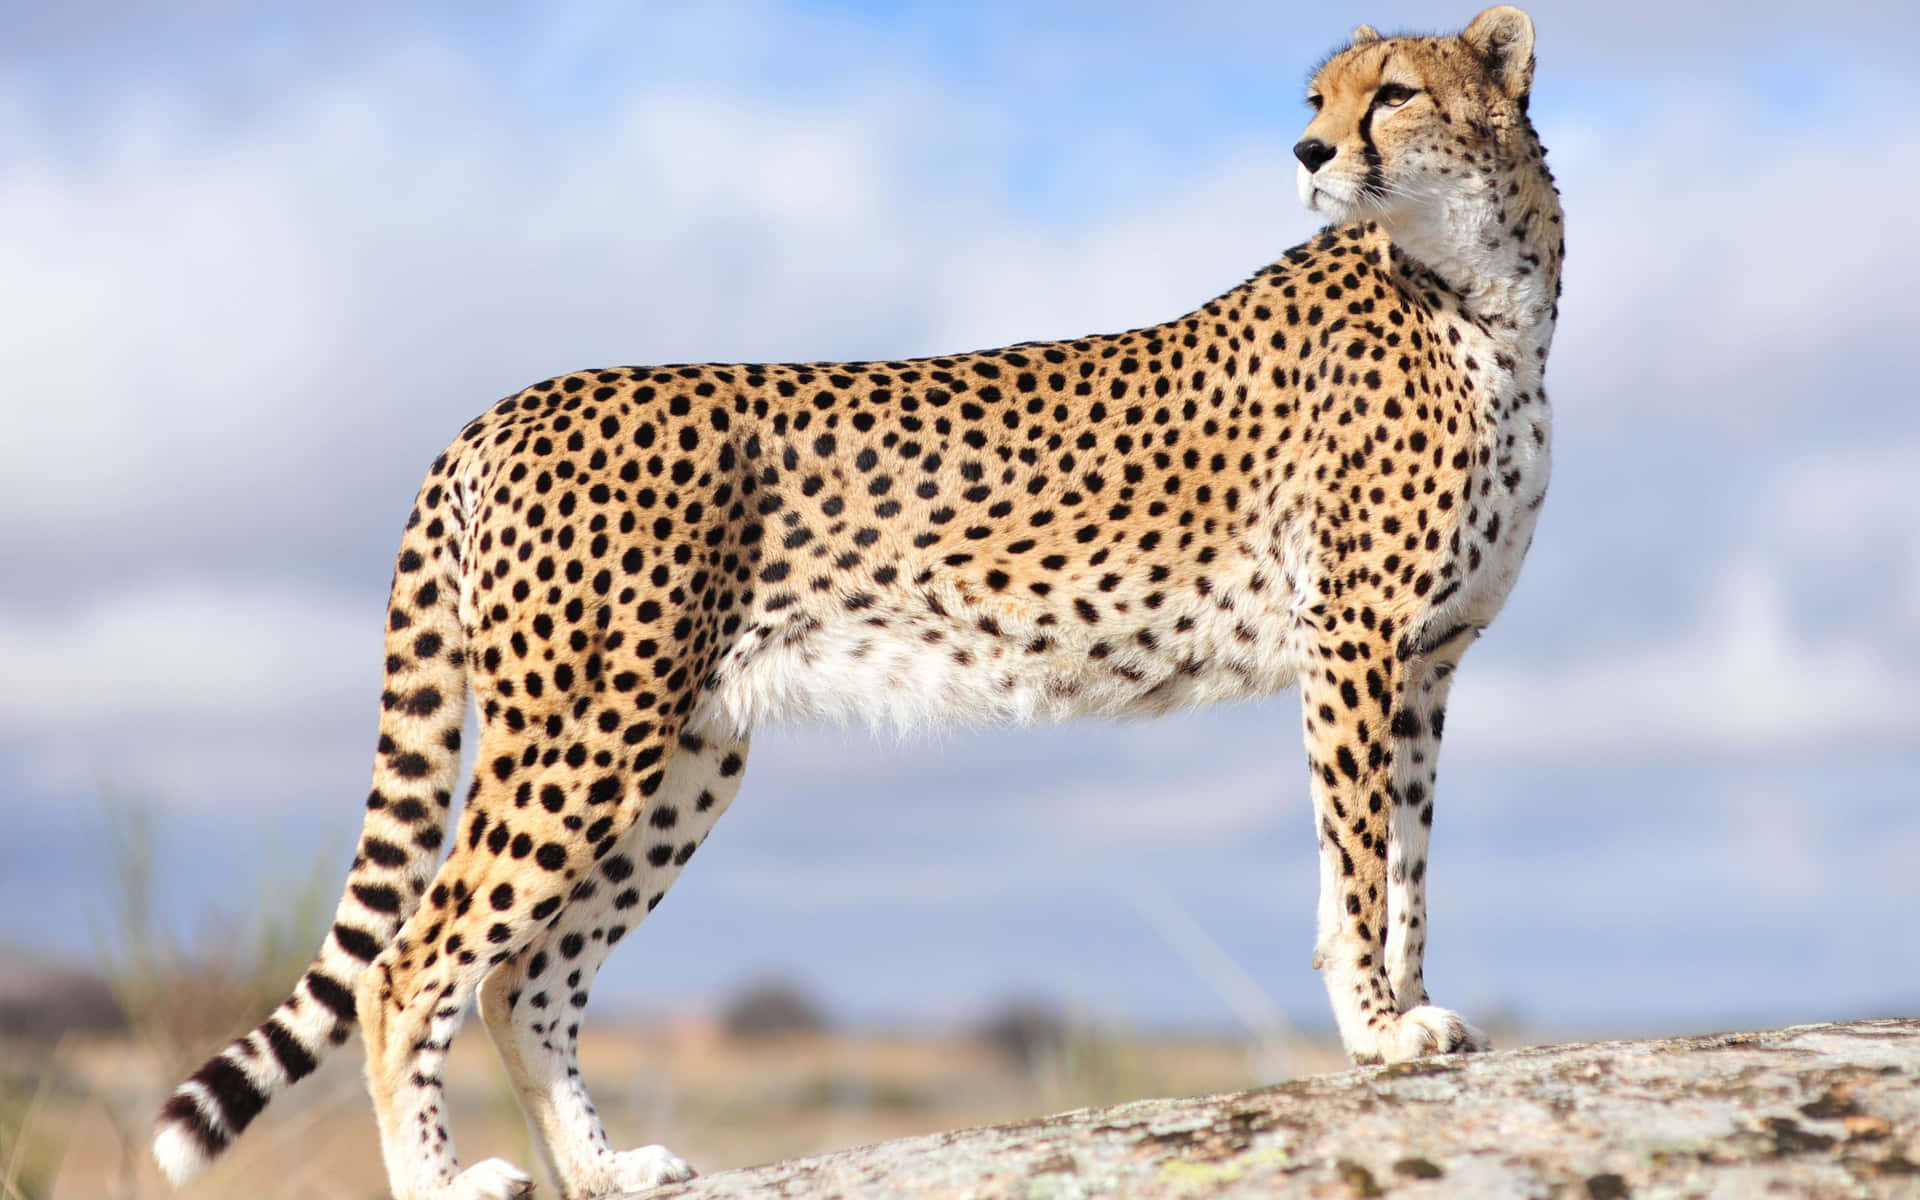 A Close-up of a Cheetah at Sunrise Wallpaper